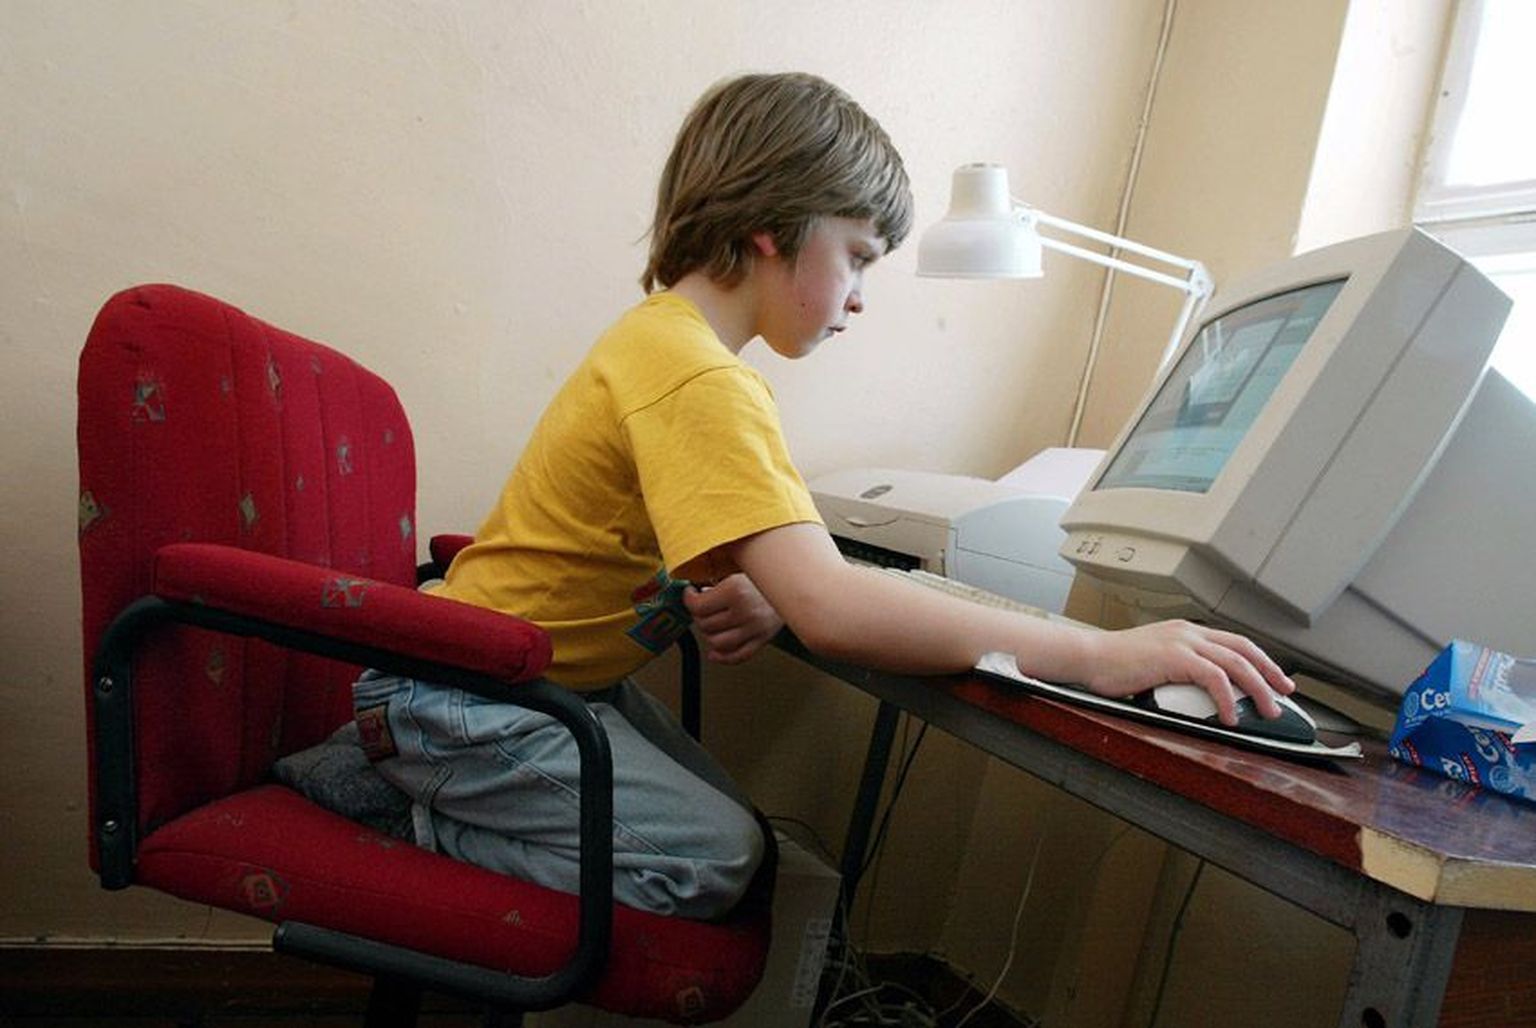 Tundide kaupa ema-isa mõõtmetele passival toolil arvutiga mängides võib saada rühihäire ja prillid pealekauba.